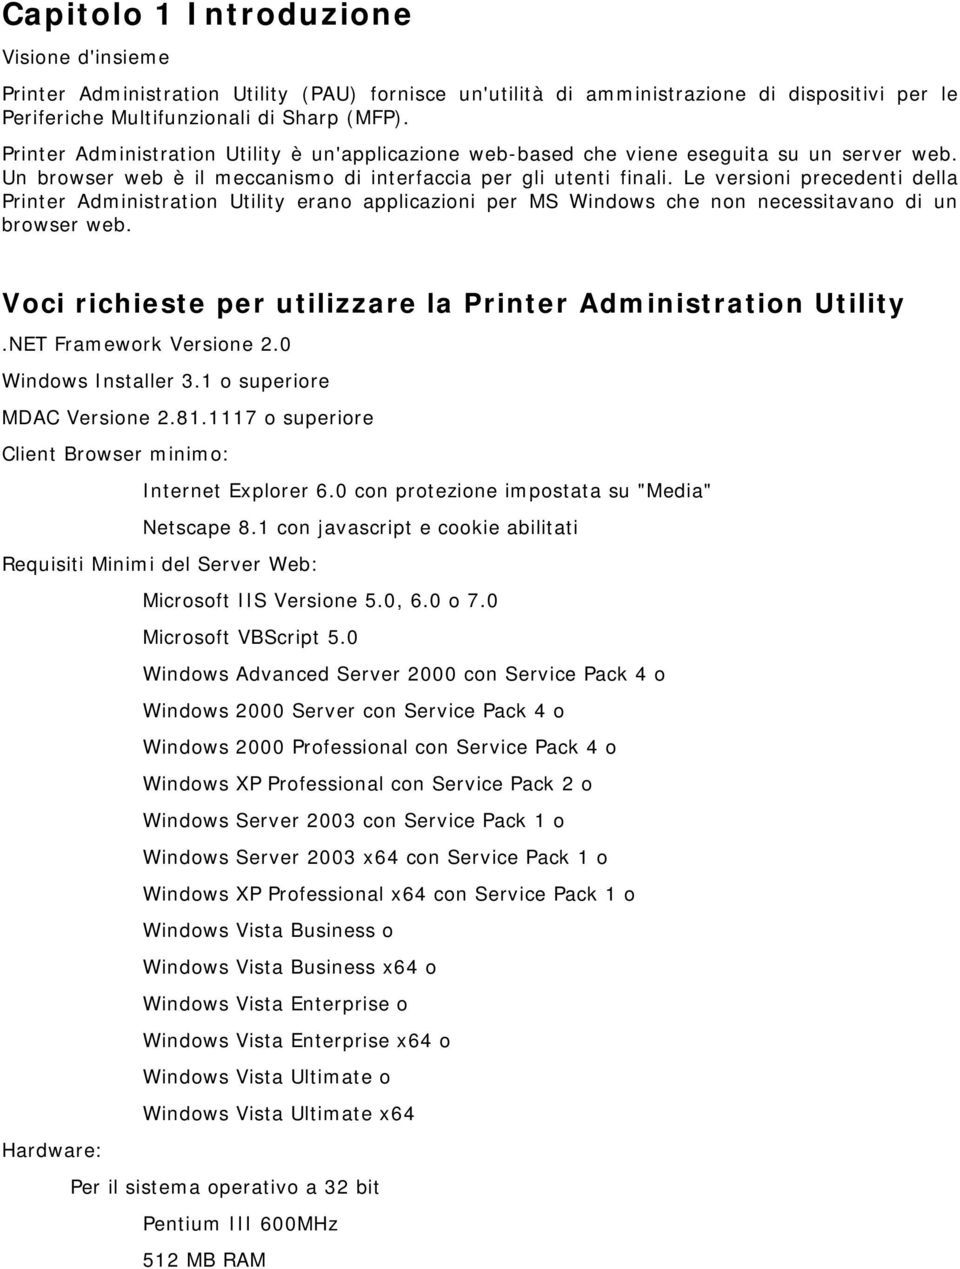 Le versioni precedenti della Printer Administration Utility erano applicazioni per MS Windows che non necessitavano di un browser web. Voci richieste per utilizzare la Printer Administration Utility.